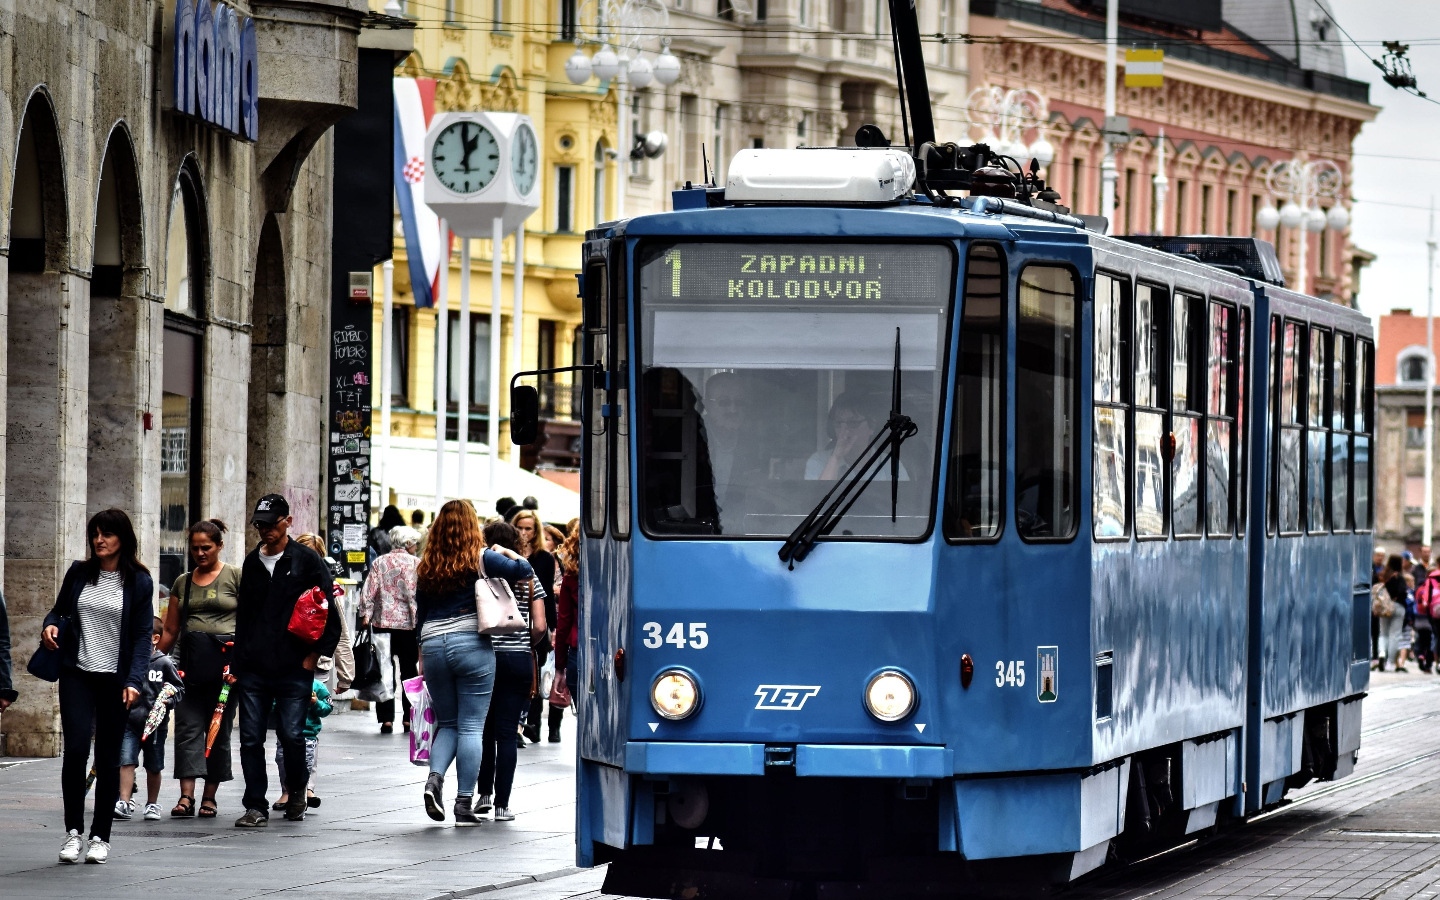 Zagreb Public Transport